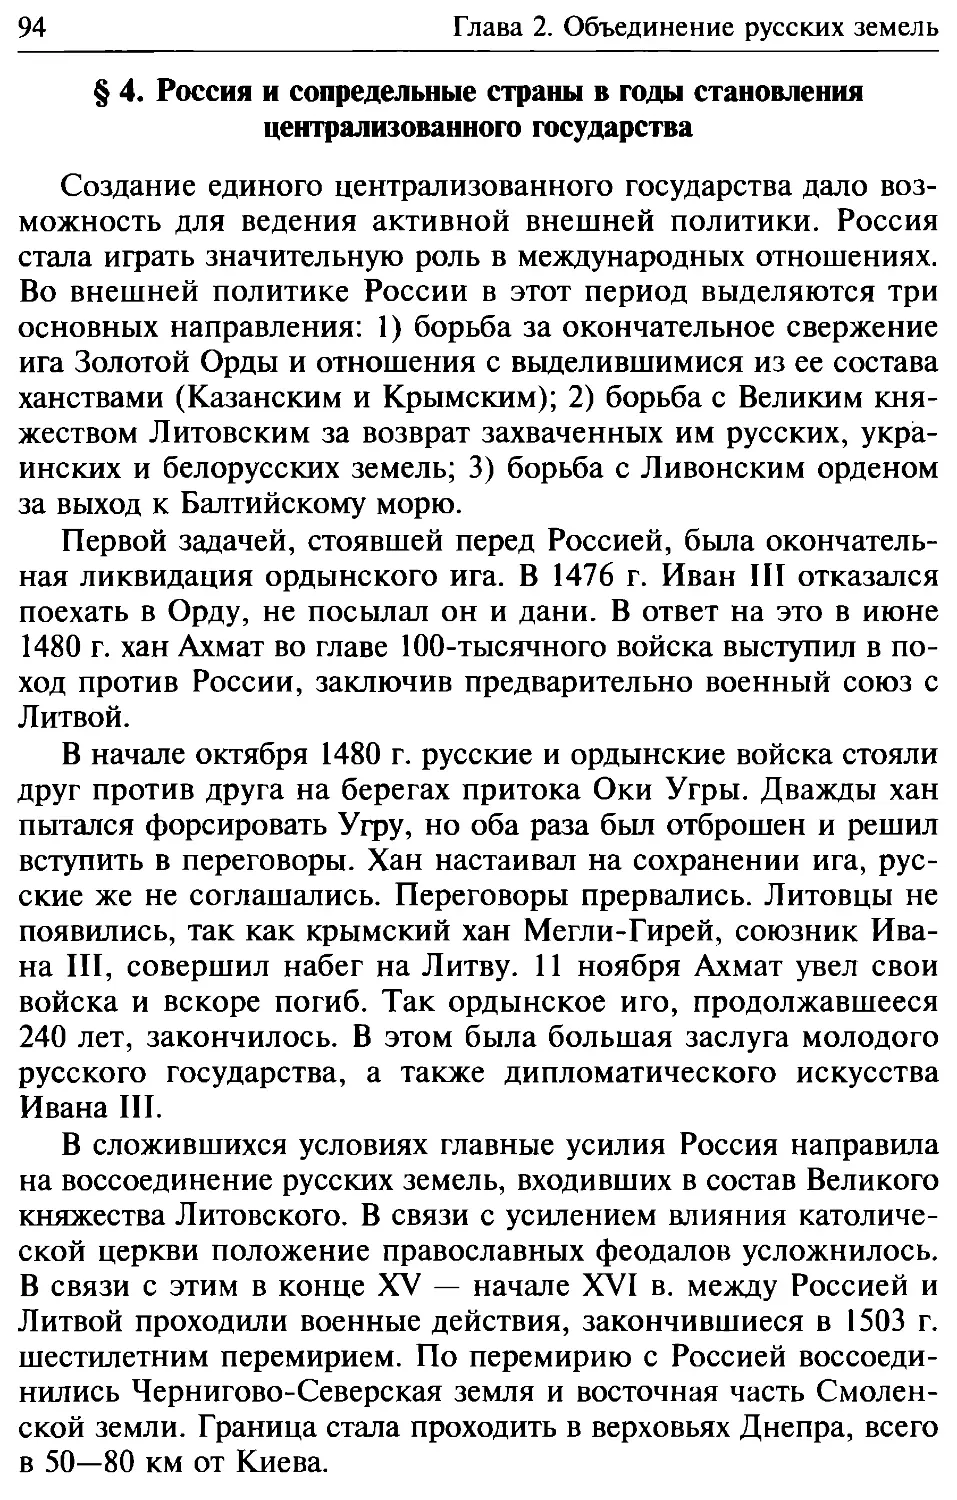 § 4. Россия и сопредельные страны в годы становления централизованного государства